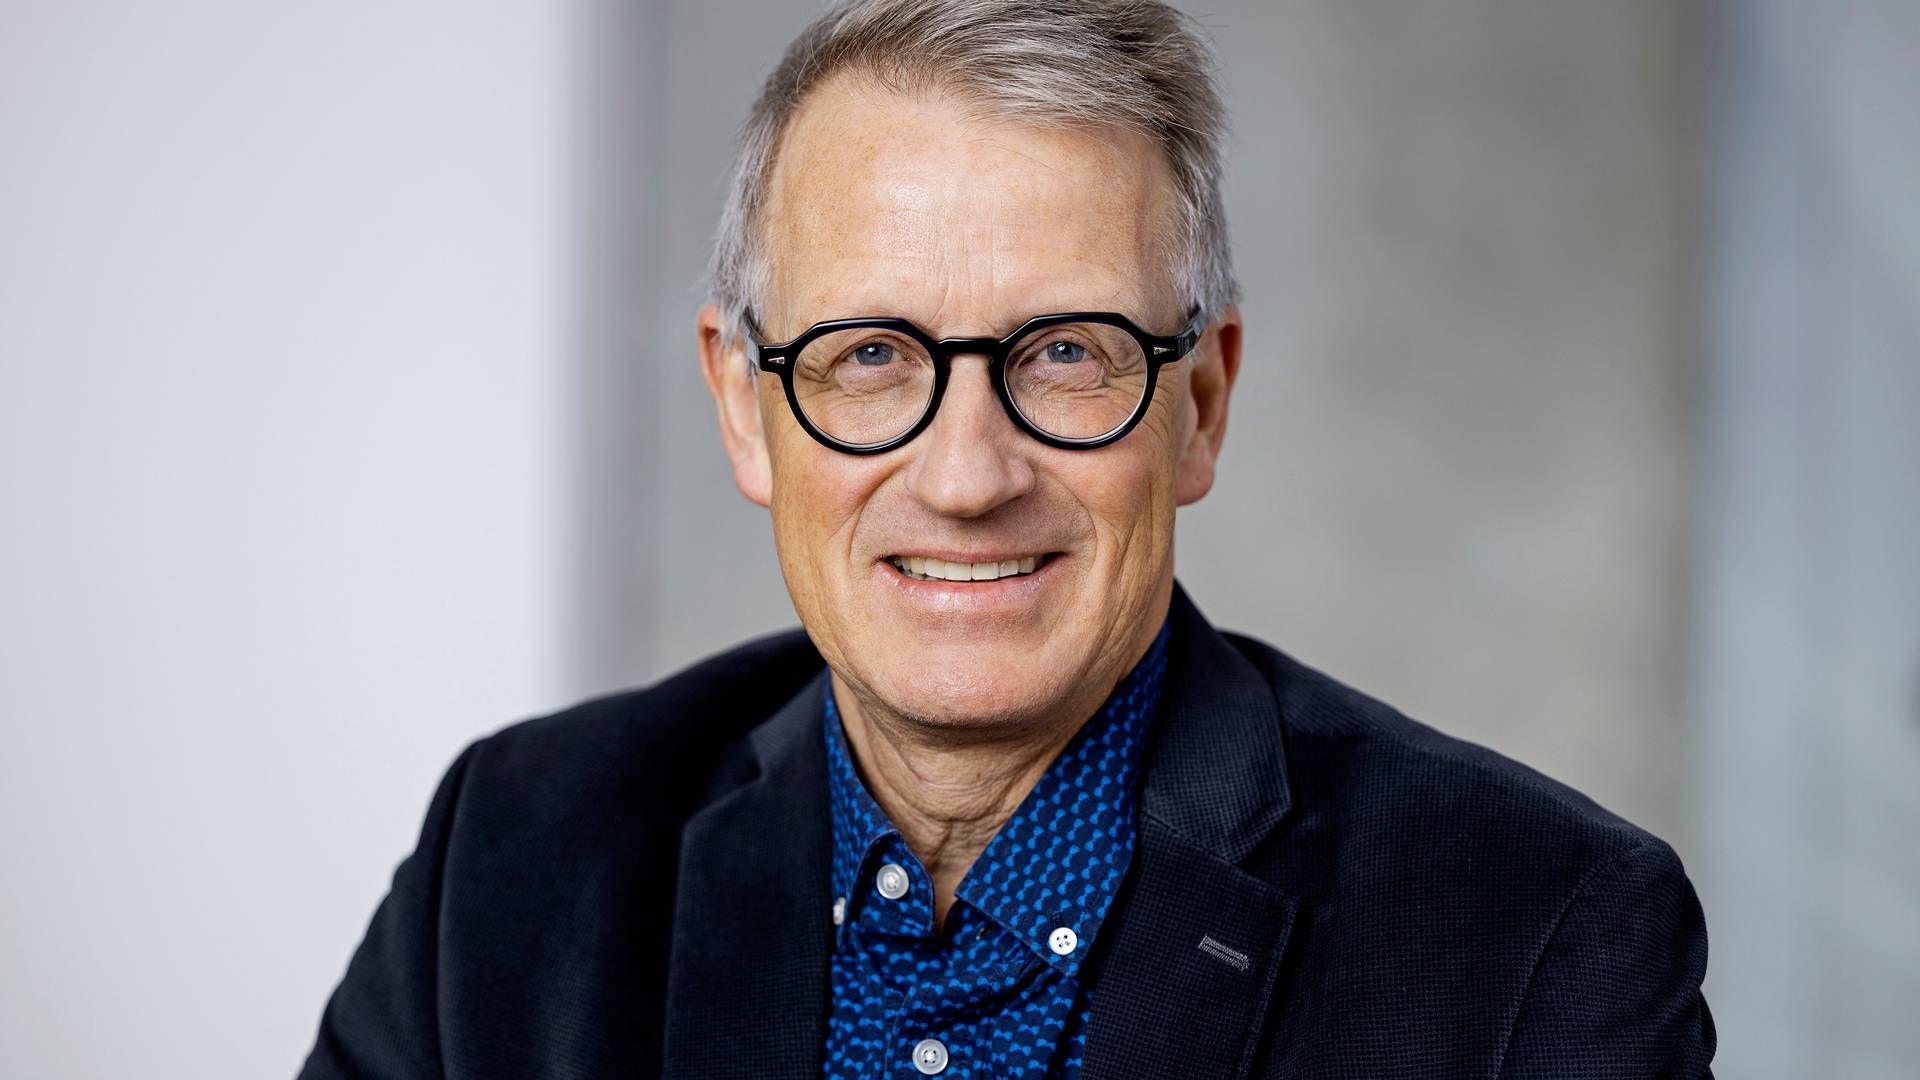 Forskningsdirektør Johan Luthman fra medicinalselskabet Lundbeck vil sætte gang i større studier indenfor migræneforebyggelse. | Foto: Lundbeck / Pr